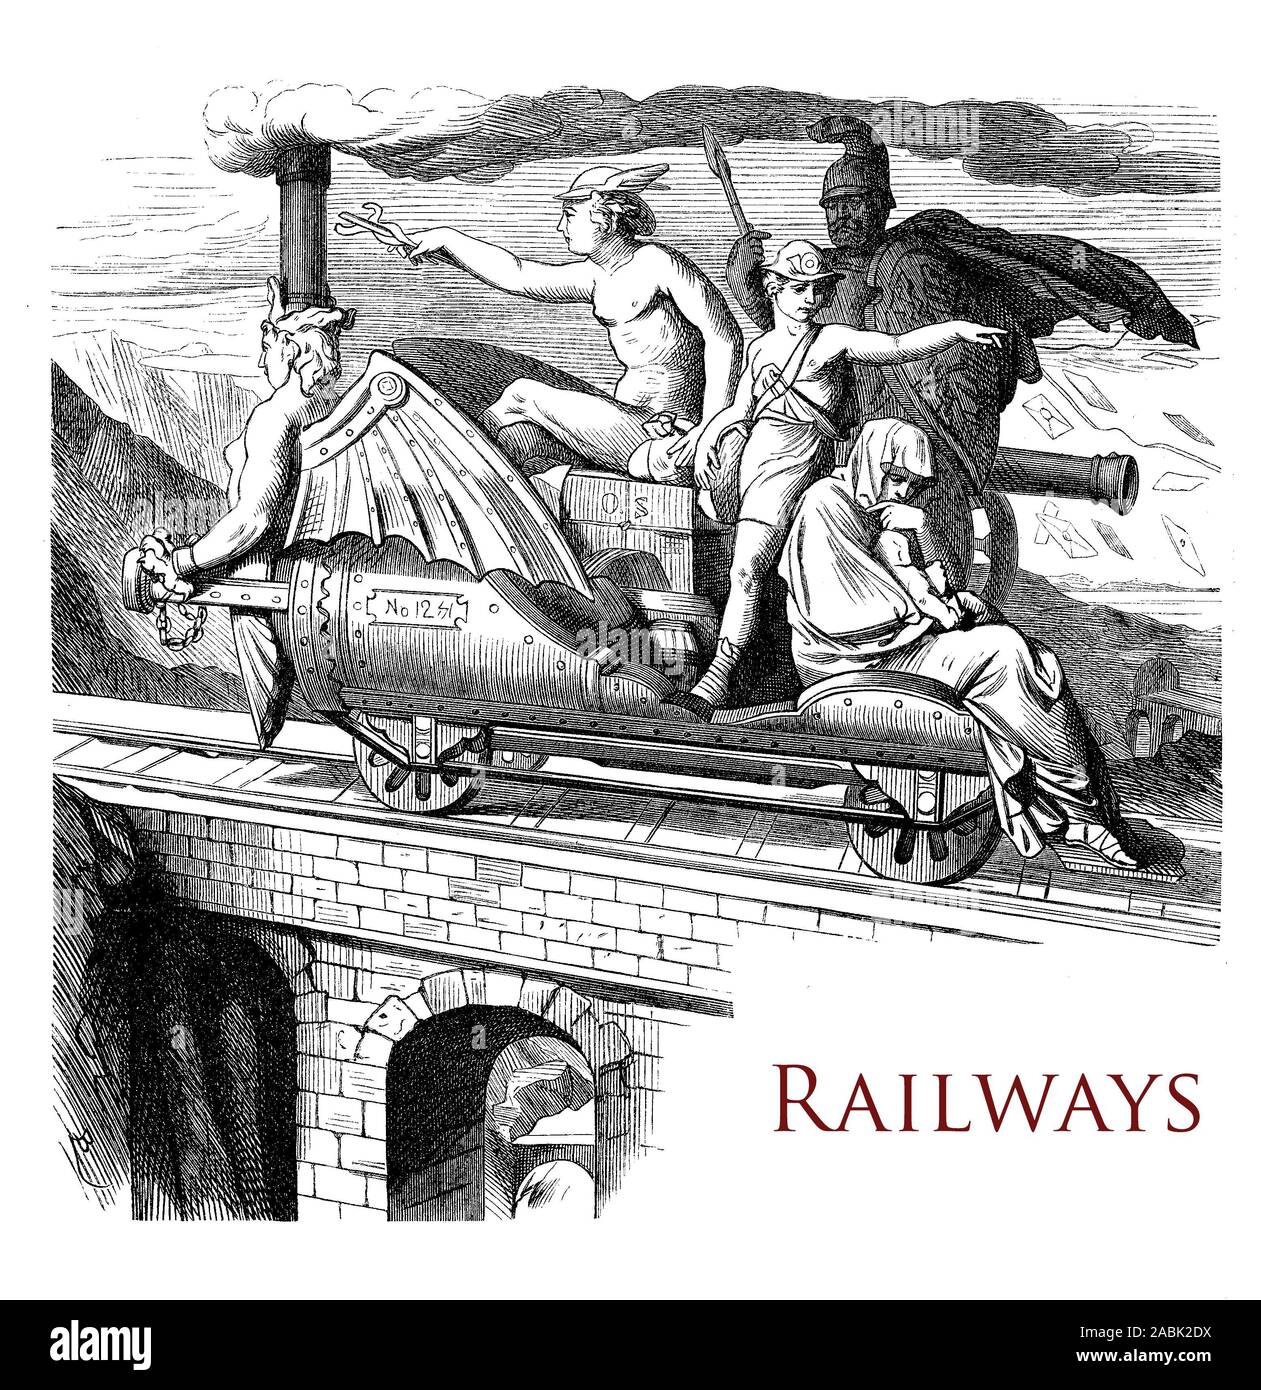 Jahrgang Kapitel Seite beschreibt die Geschichte der Eisenbahn Verkehr und Reisen mit mythologischen Figuren und Gott Hermes als Messenger eingerichtet Stockfoto